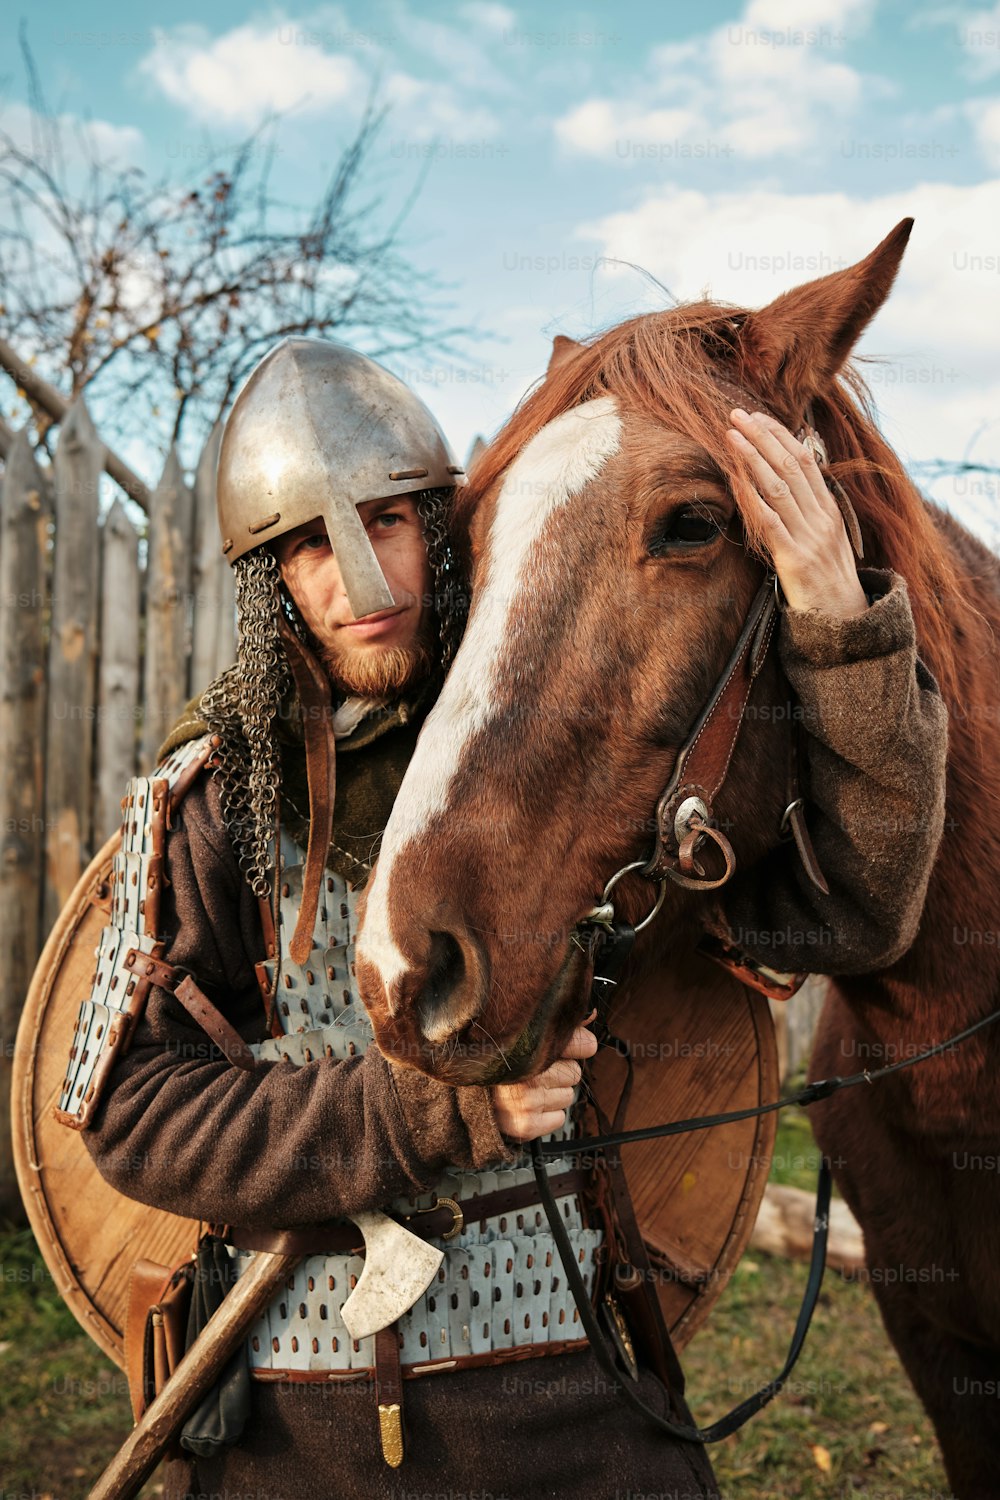 Ein Mann mit Helm steht neben einem Pferd